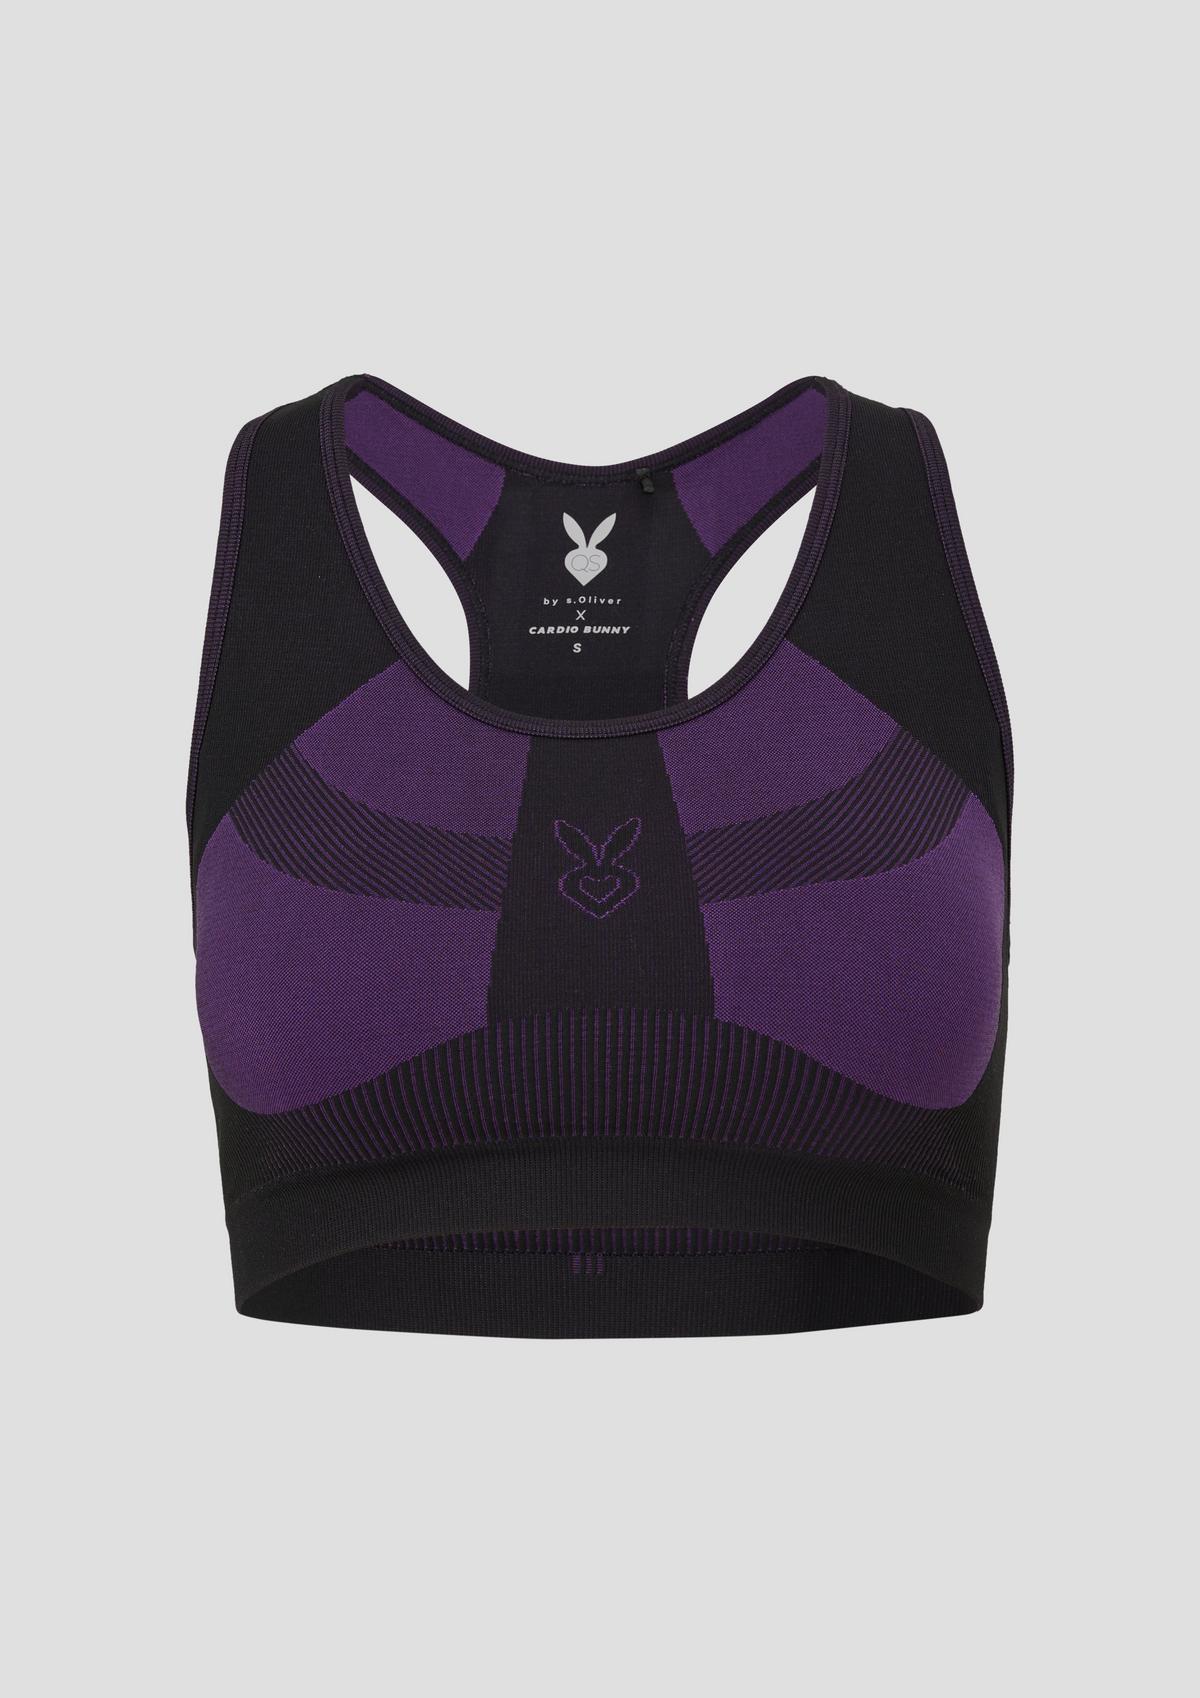 Stretchy sports bra - purple